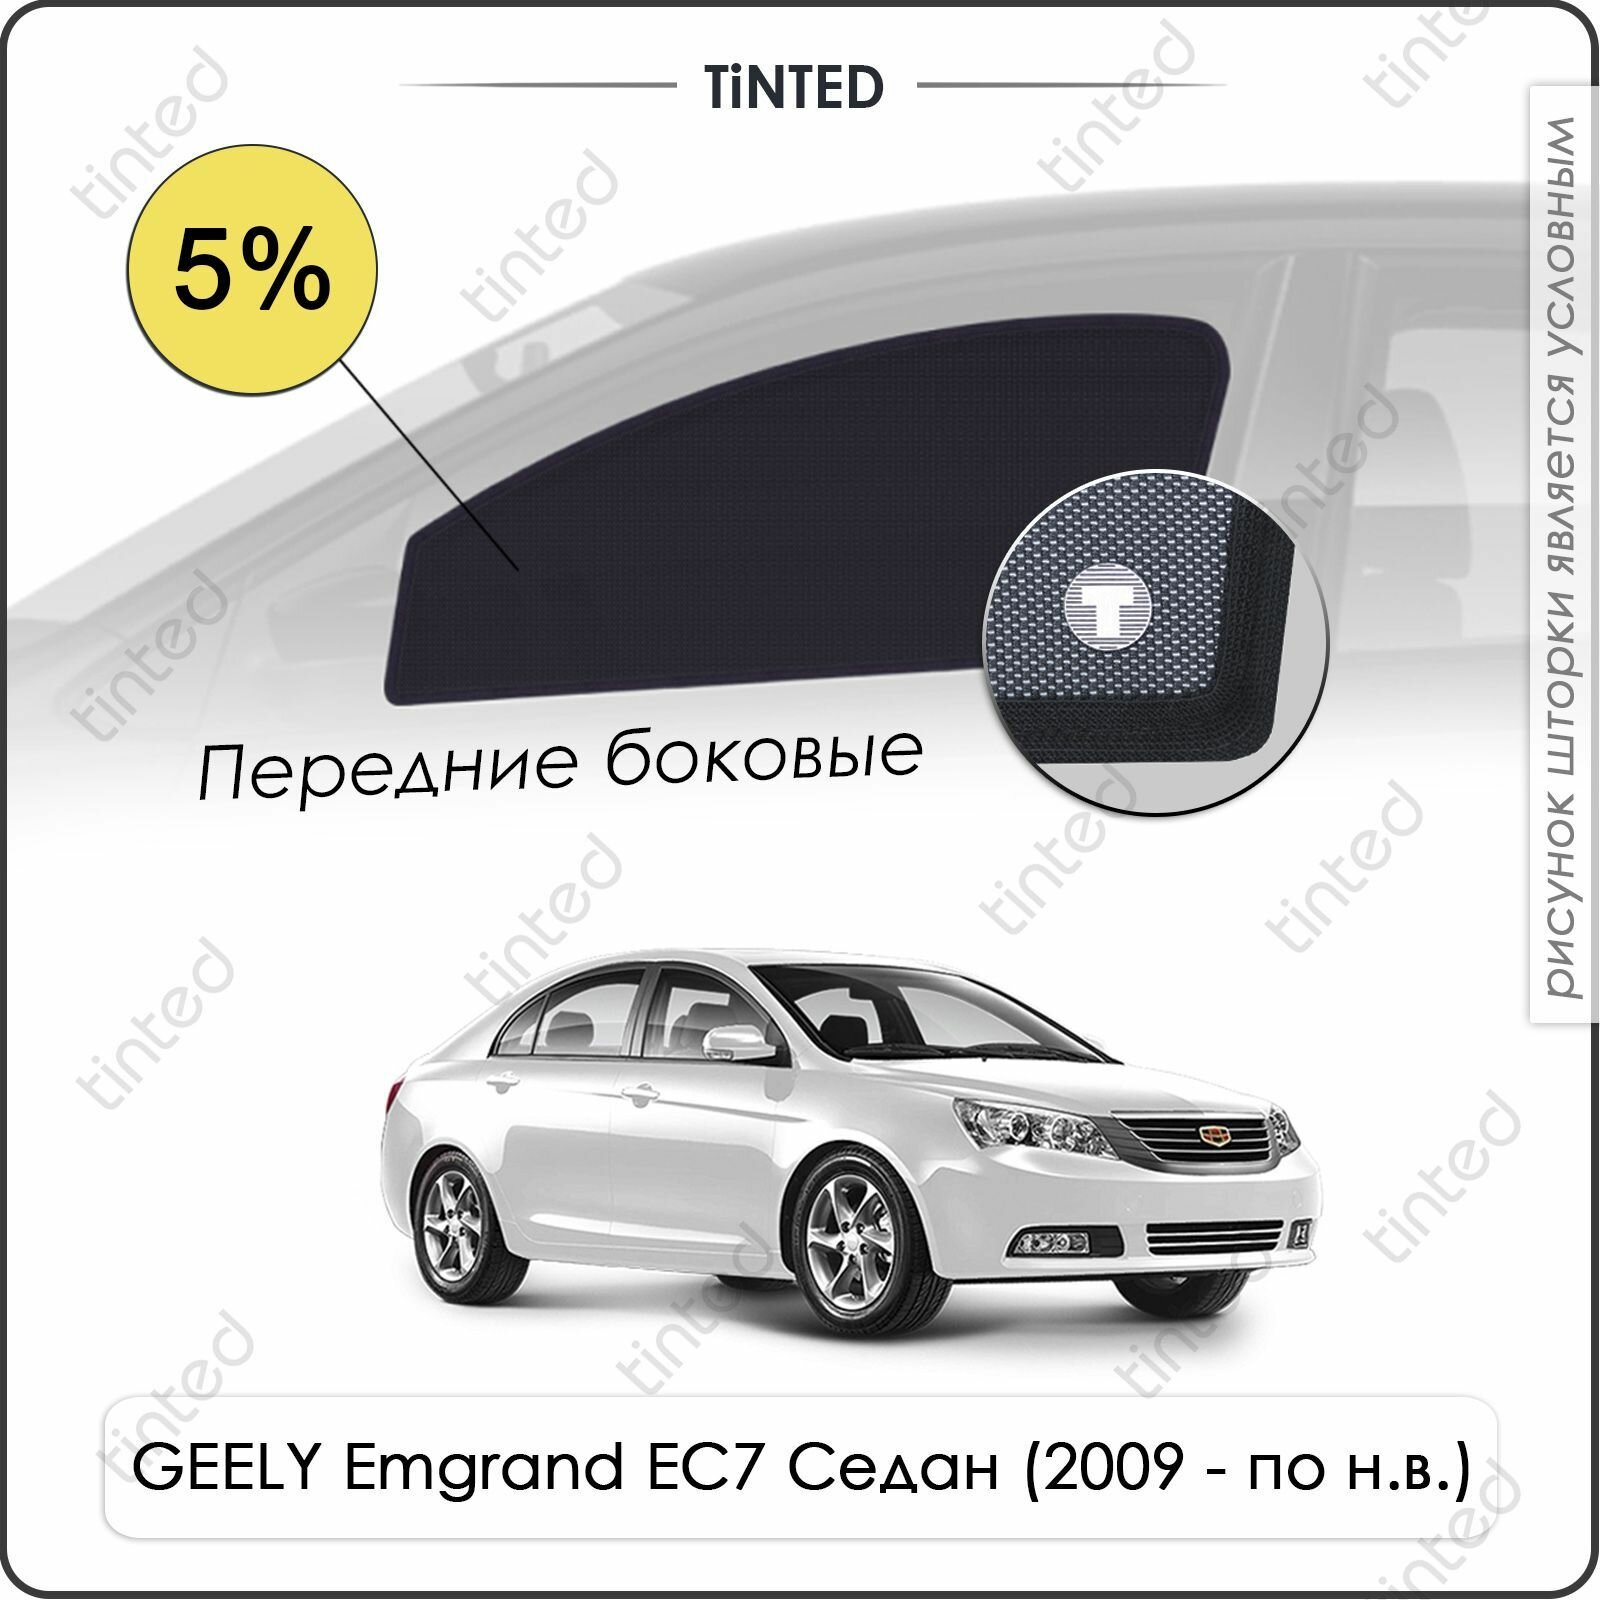 Шторки на автомобиль солнцезащитные GEELY Emgrand EC7 1 Седан 4дв. (2009 - по н. в.) на передние двери 5%, сетки от солнца в машину джили эмгранд ЕС7, Каркасные автошторки Premium